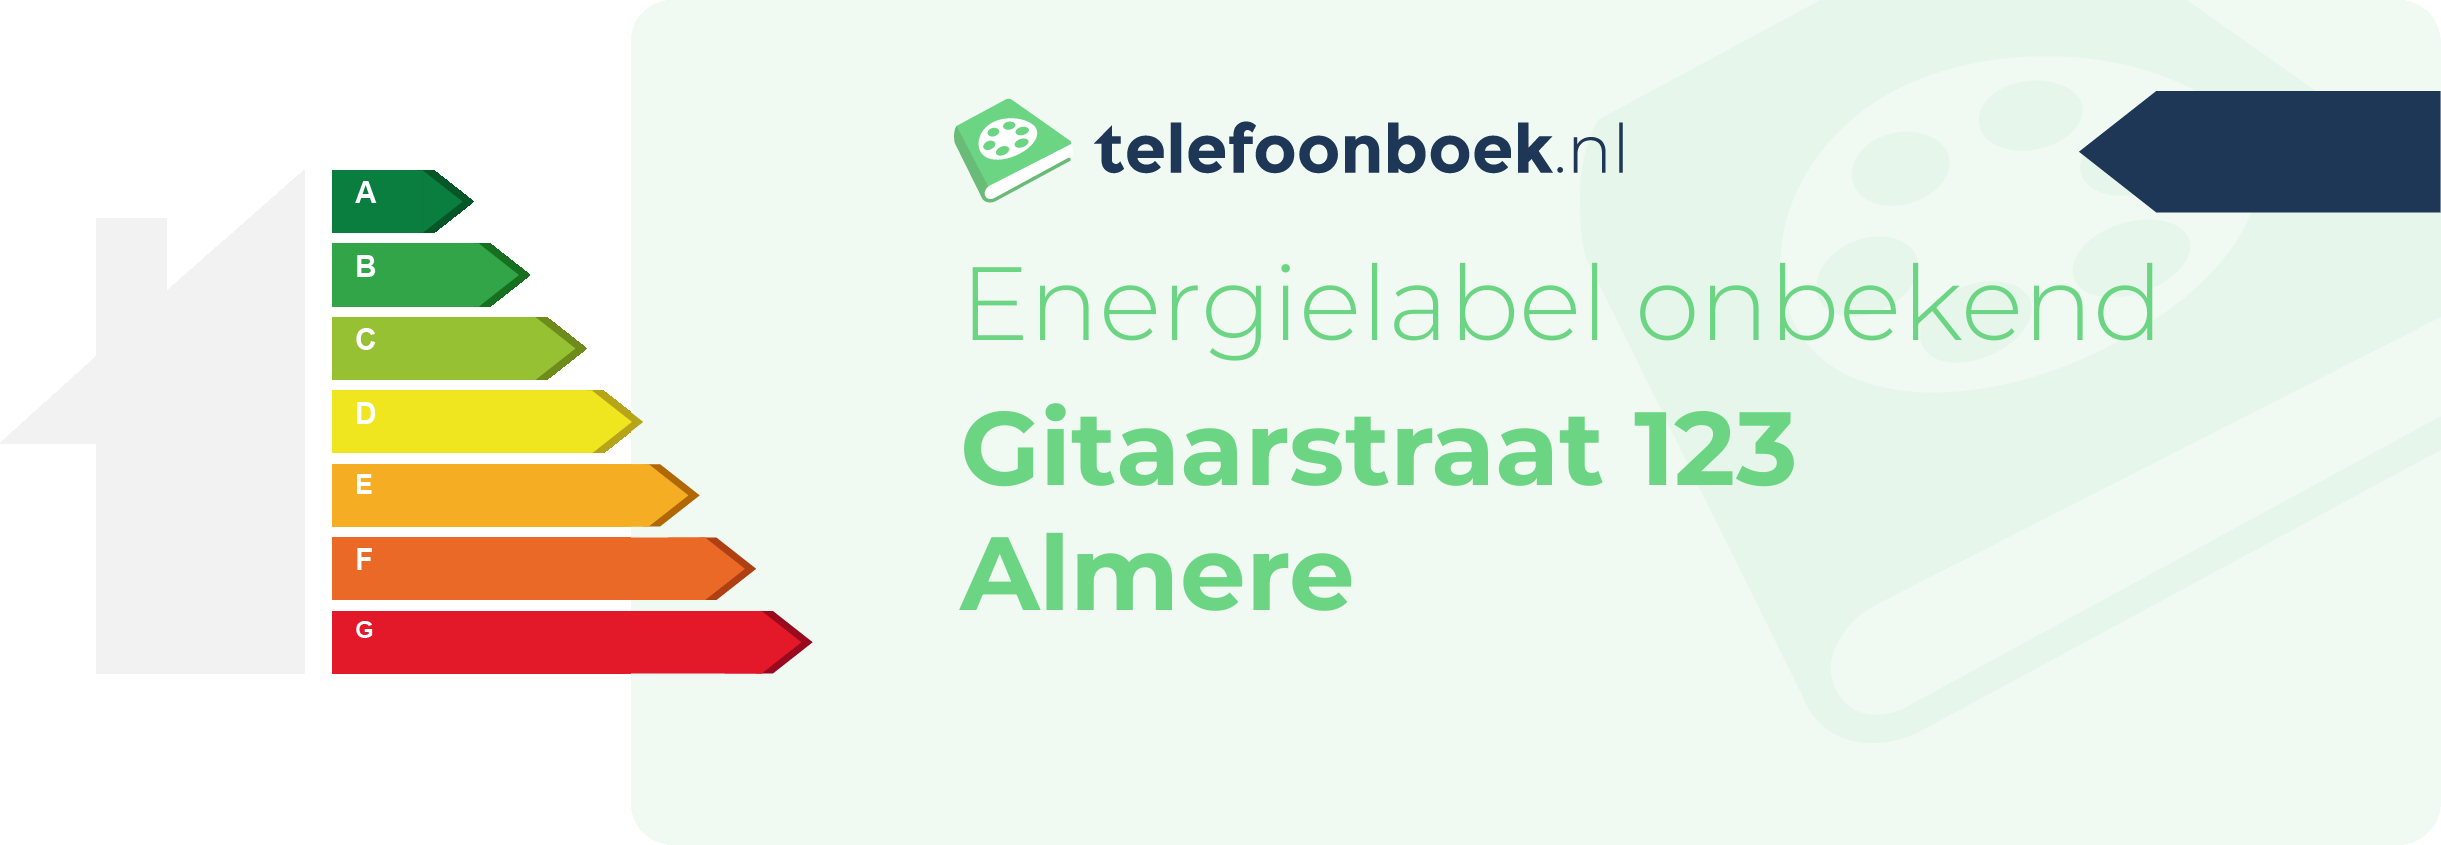 Energielabel Gitaarstraat 123 Almere